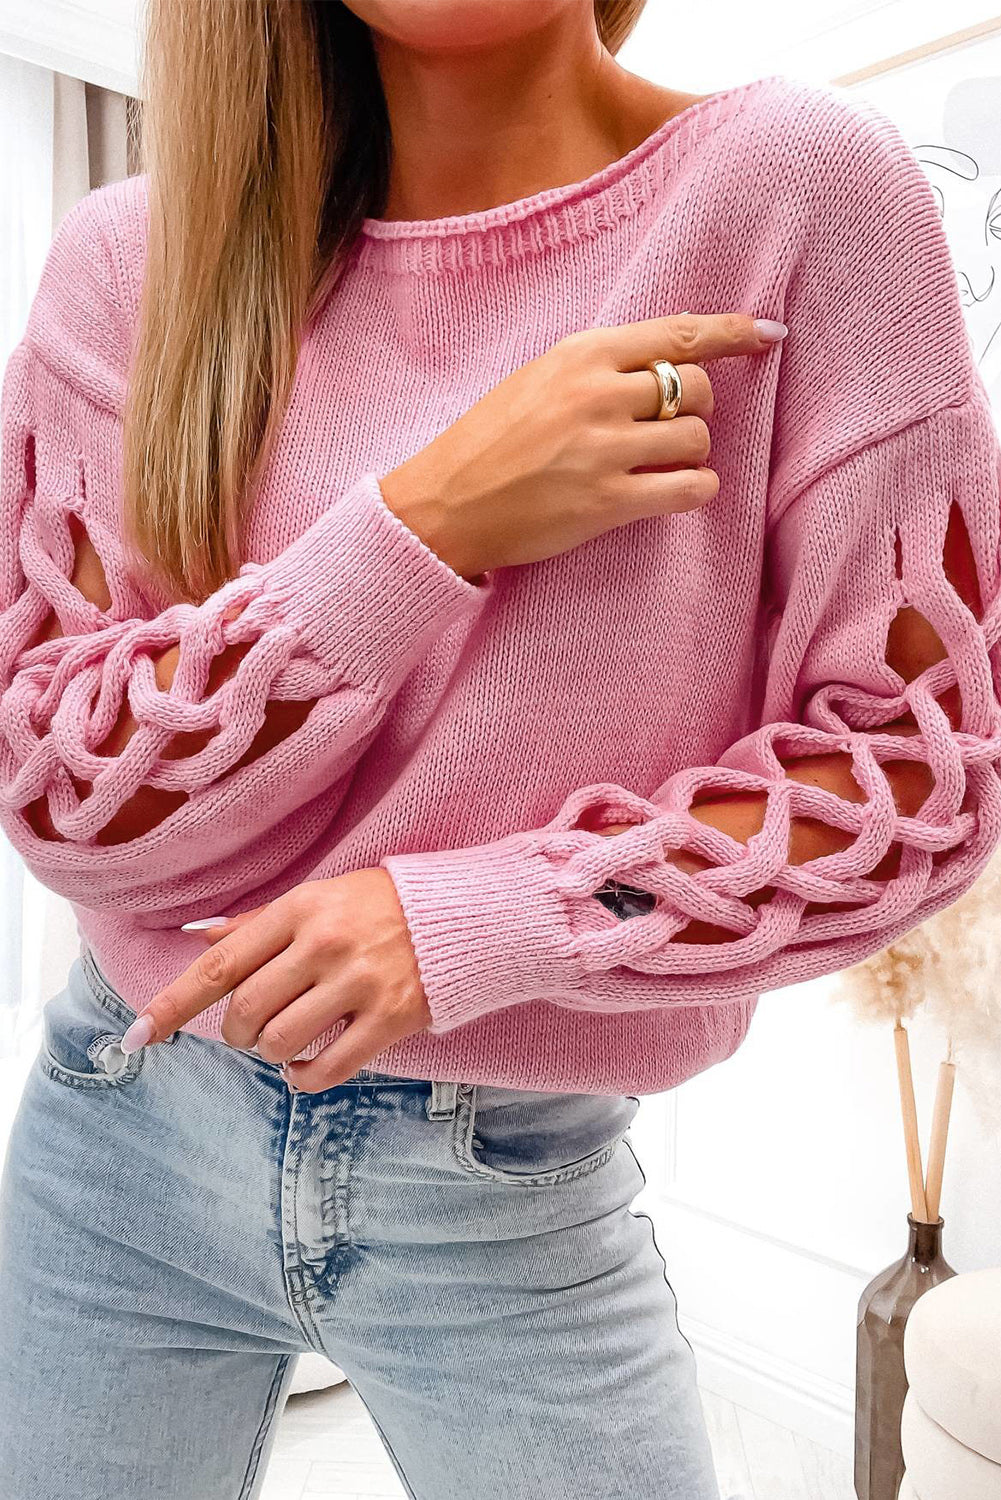 Maglione con maniche scese scolpite in tessuto rosa